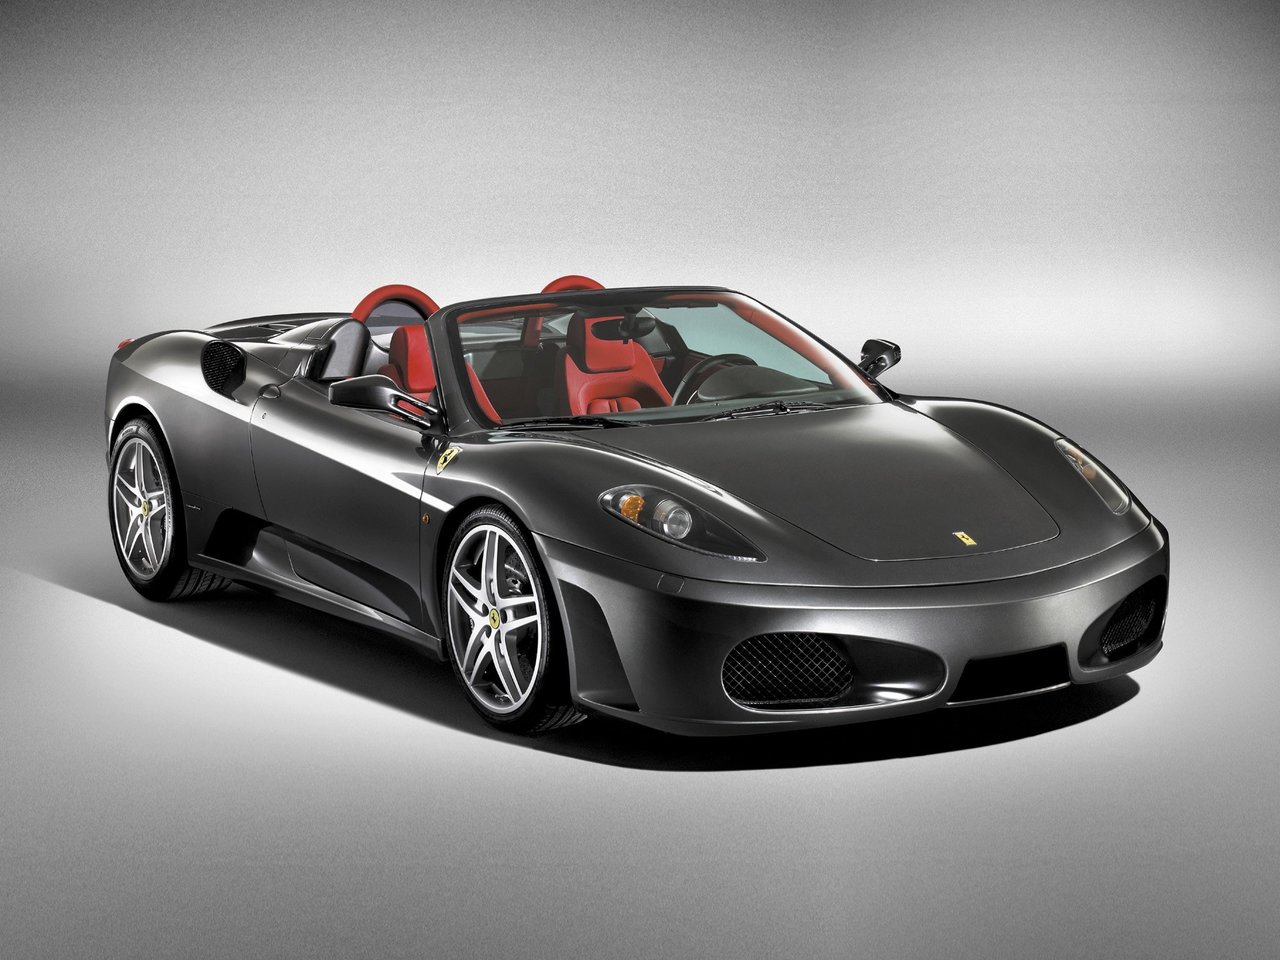 Расход газа одной комплектации кабриолет Spider Ferrari F430. Разница стоимости заправки газом и бензином. Автономный пробег до и после установки ГБО.